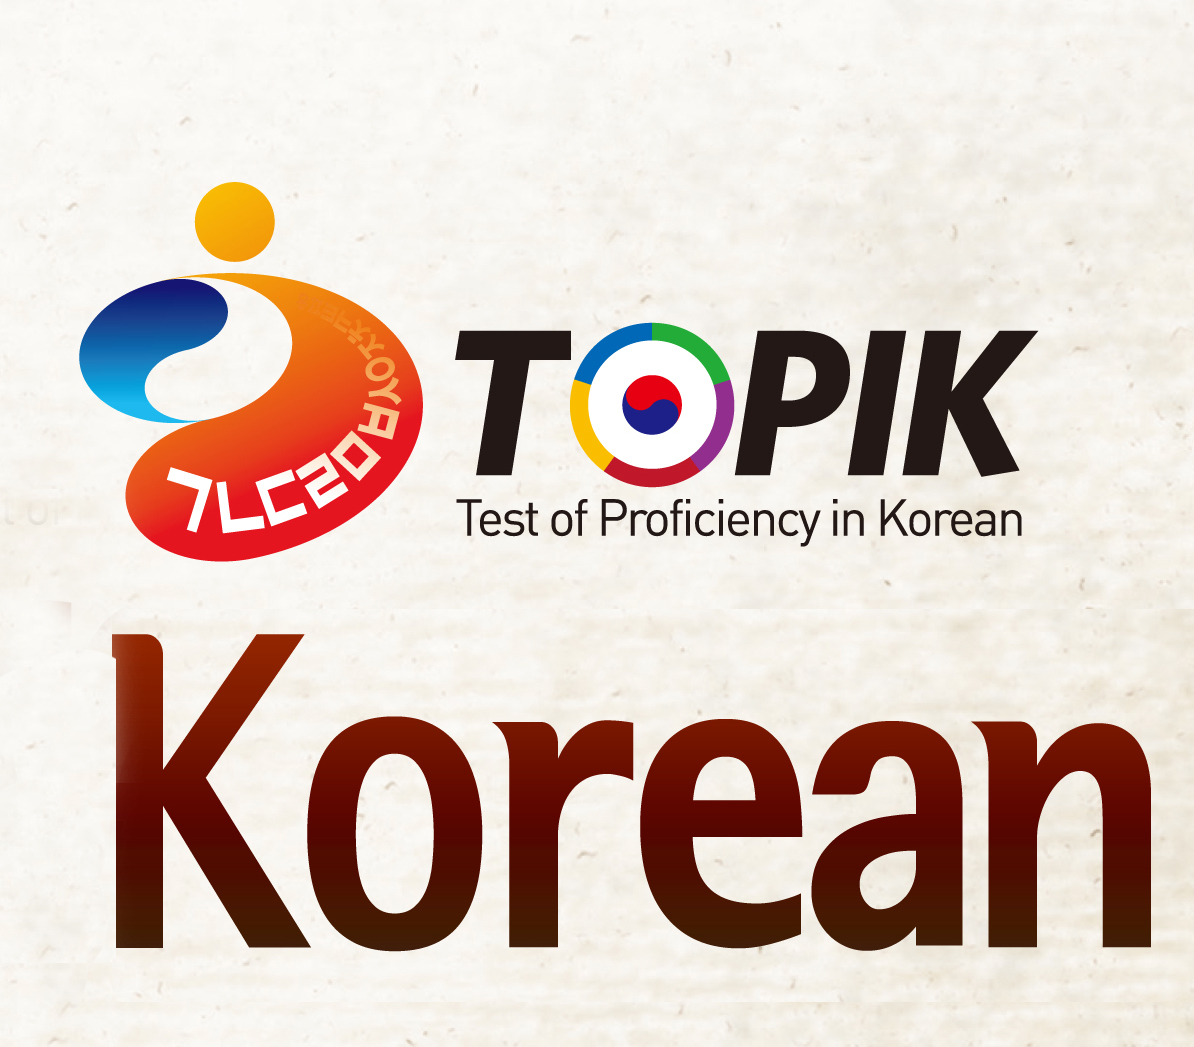 Bài thi TOPIK tiếng Hàn